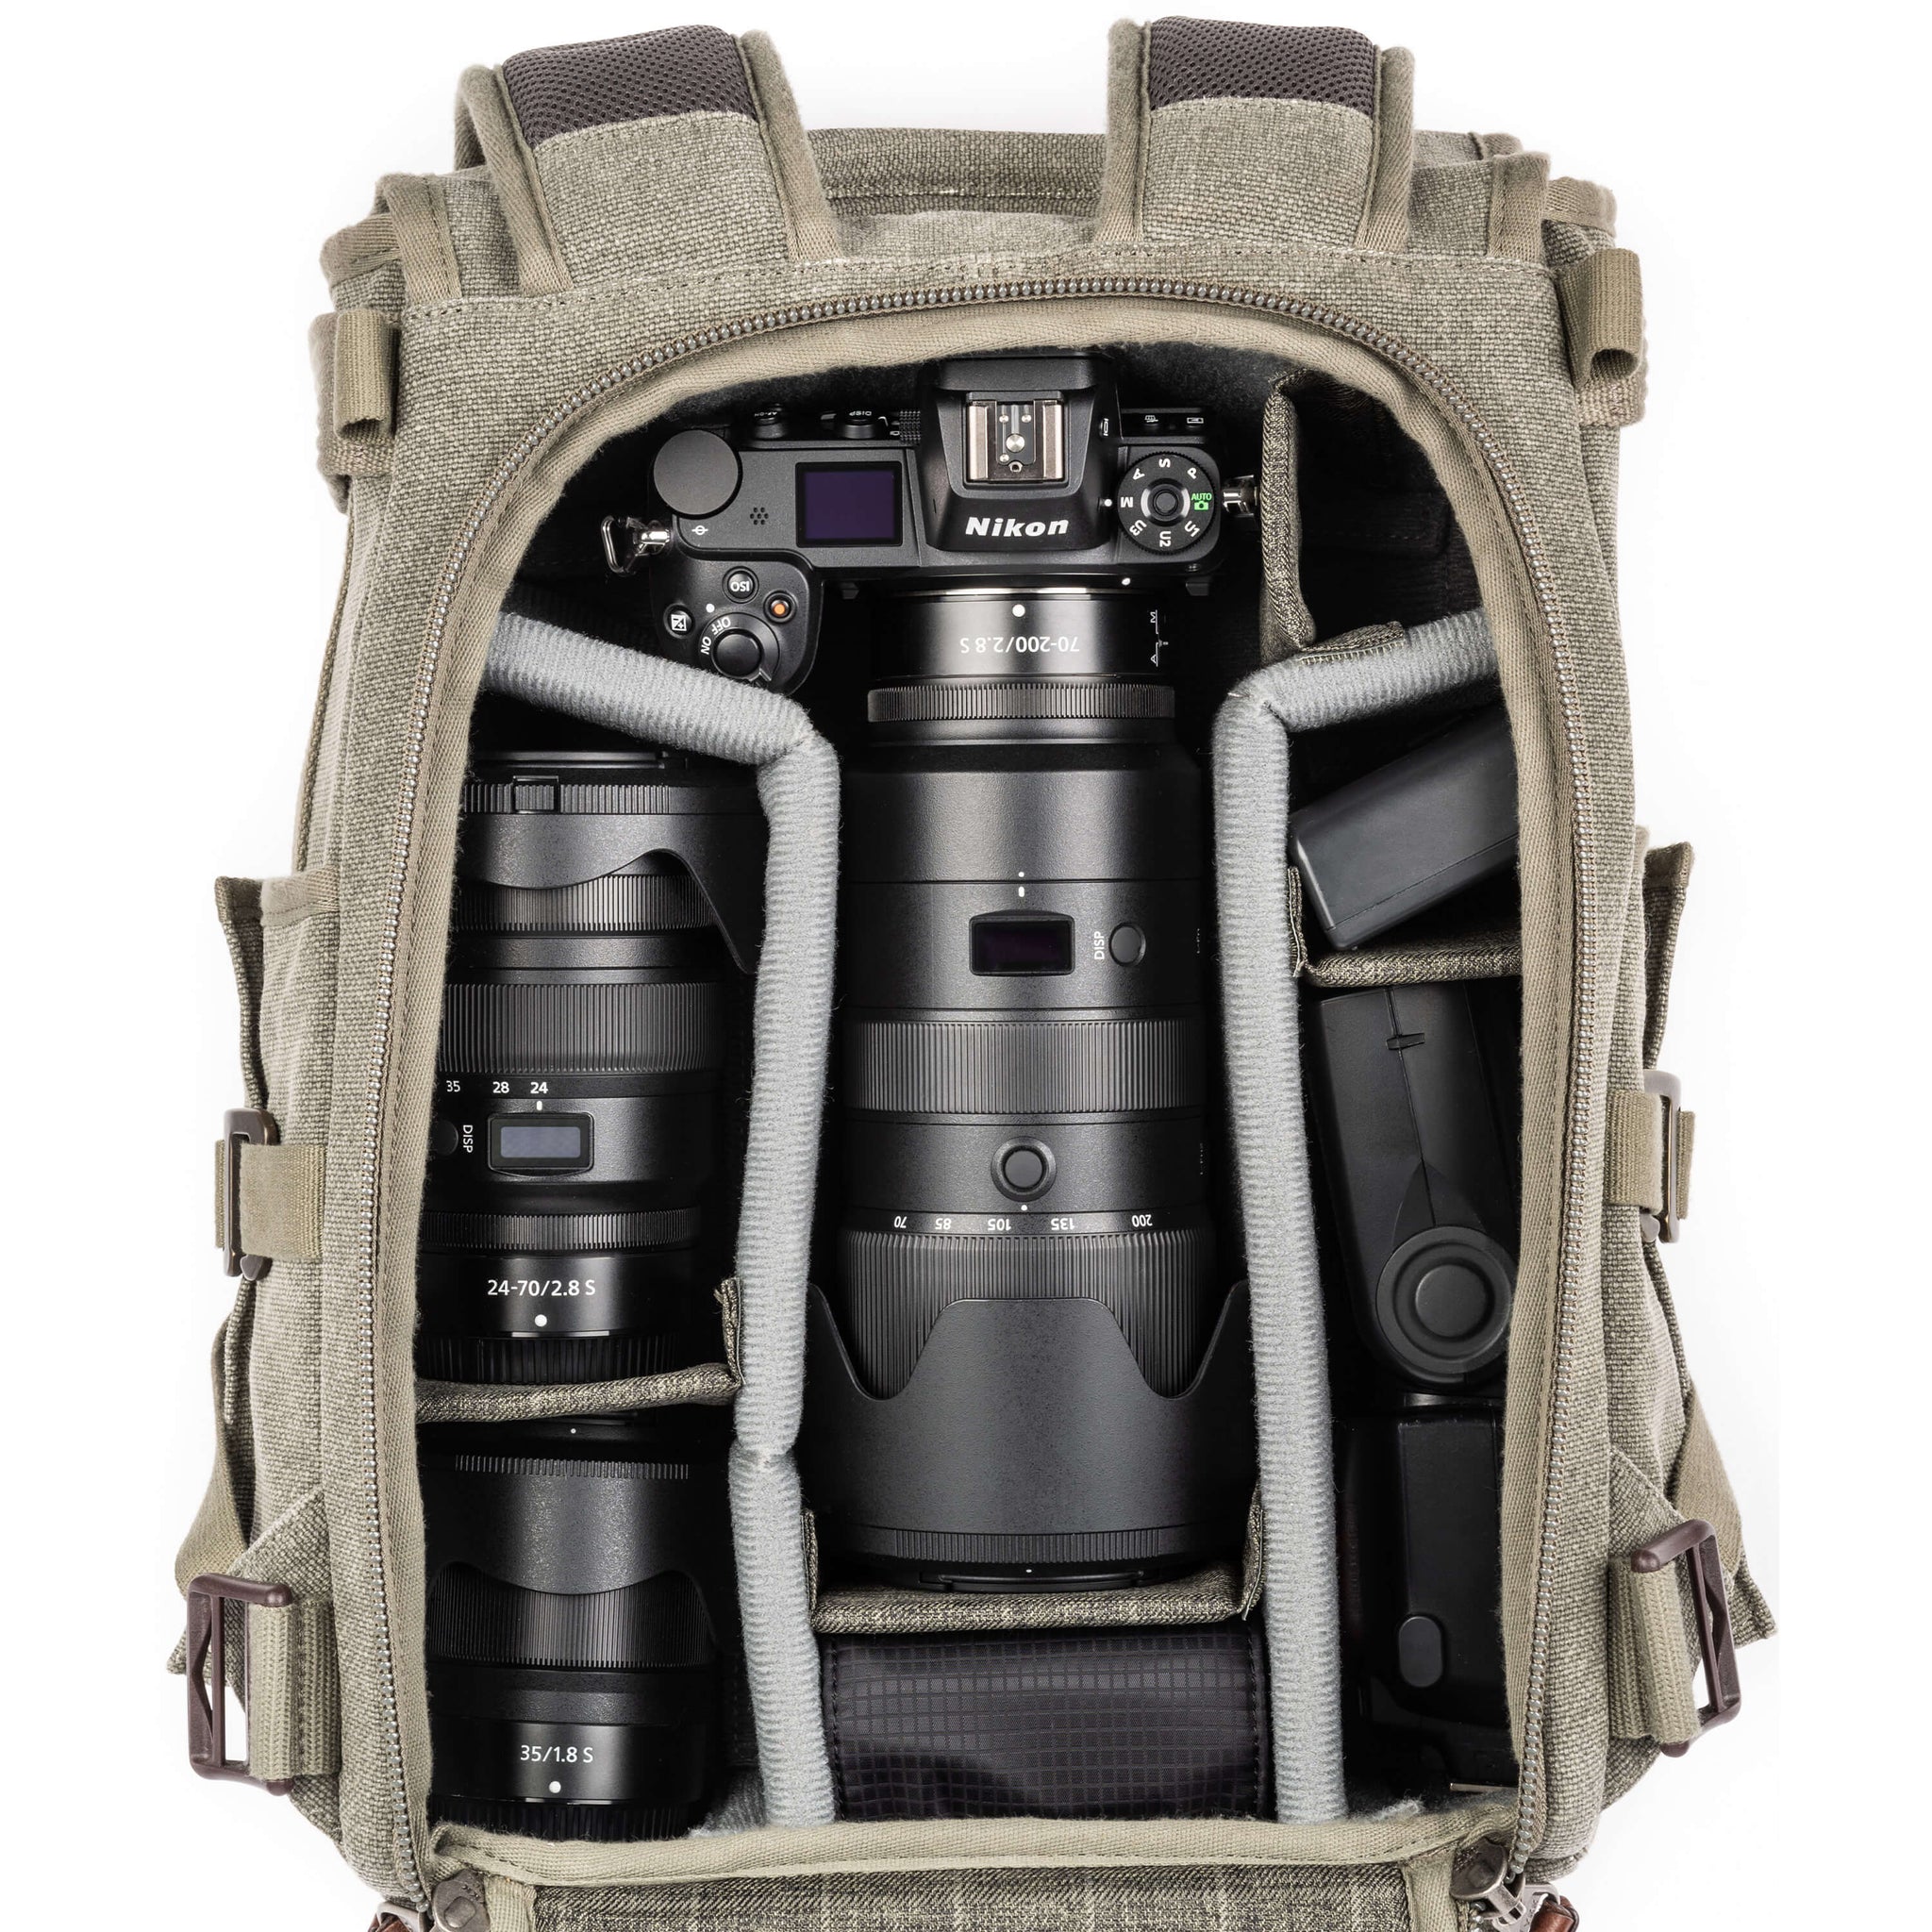 Nikon Z6+70-200mm f/2.8, 24-70mm f/2.8, 35mm f/1.8, Flash, Filters